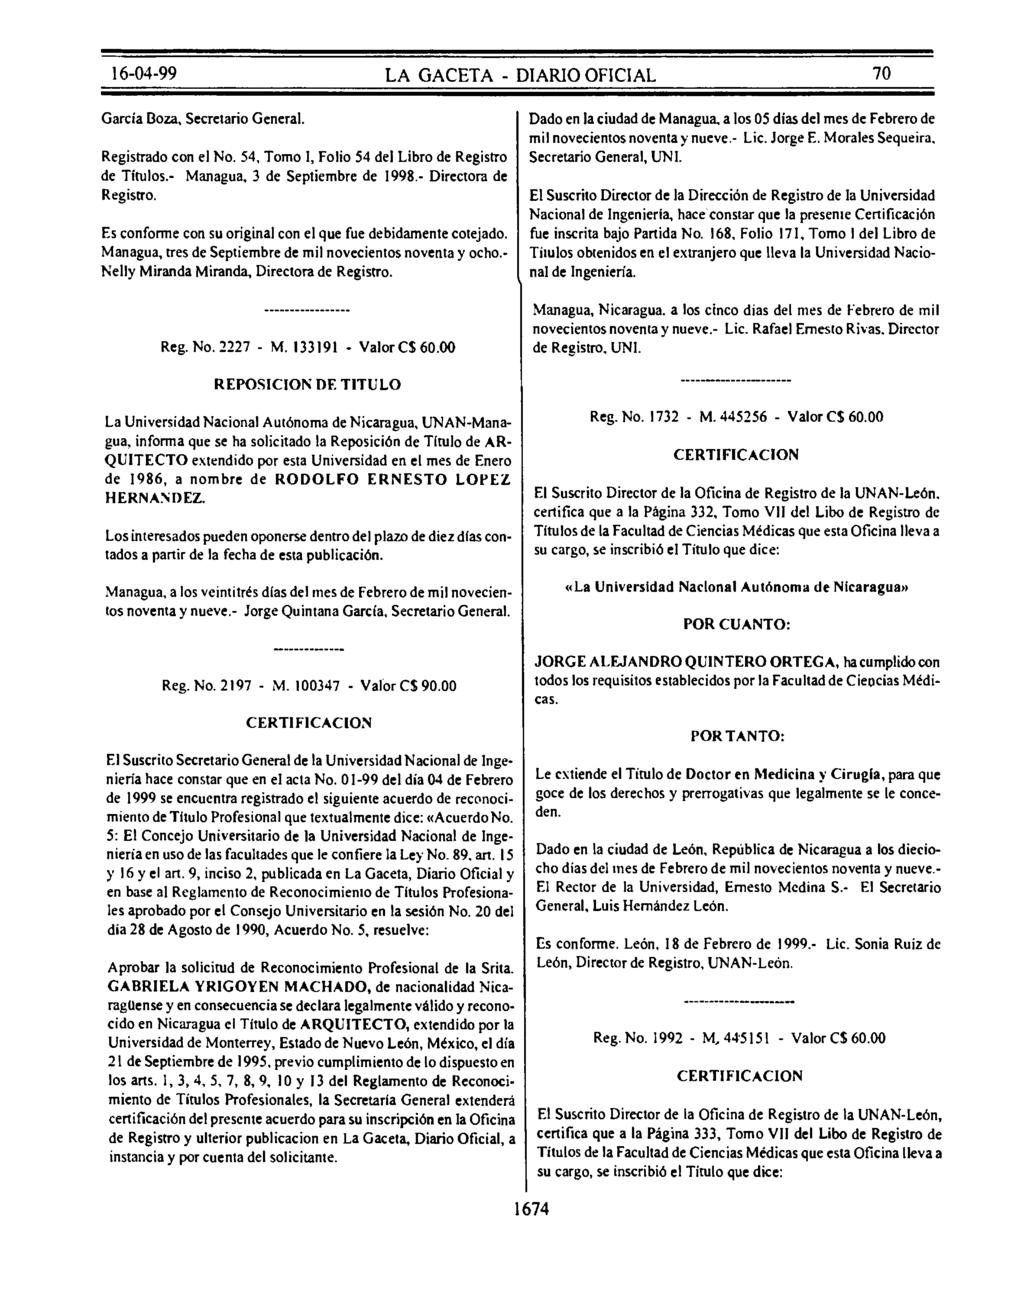 García Boza, Secretario General. Registrado con el No. 54, Tomo I, Folio 54 del Libro de Registro de Títulos.- Managua, 3 de Septiembre de 1998.- Directora de Registro.